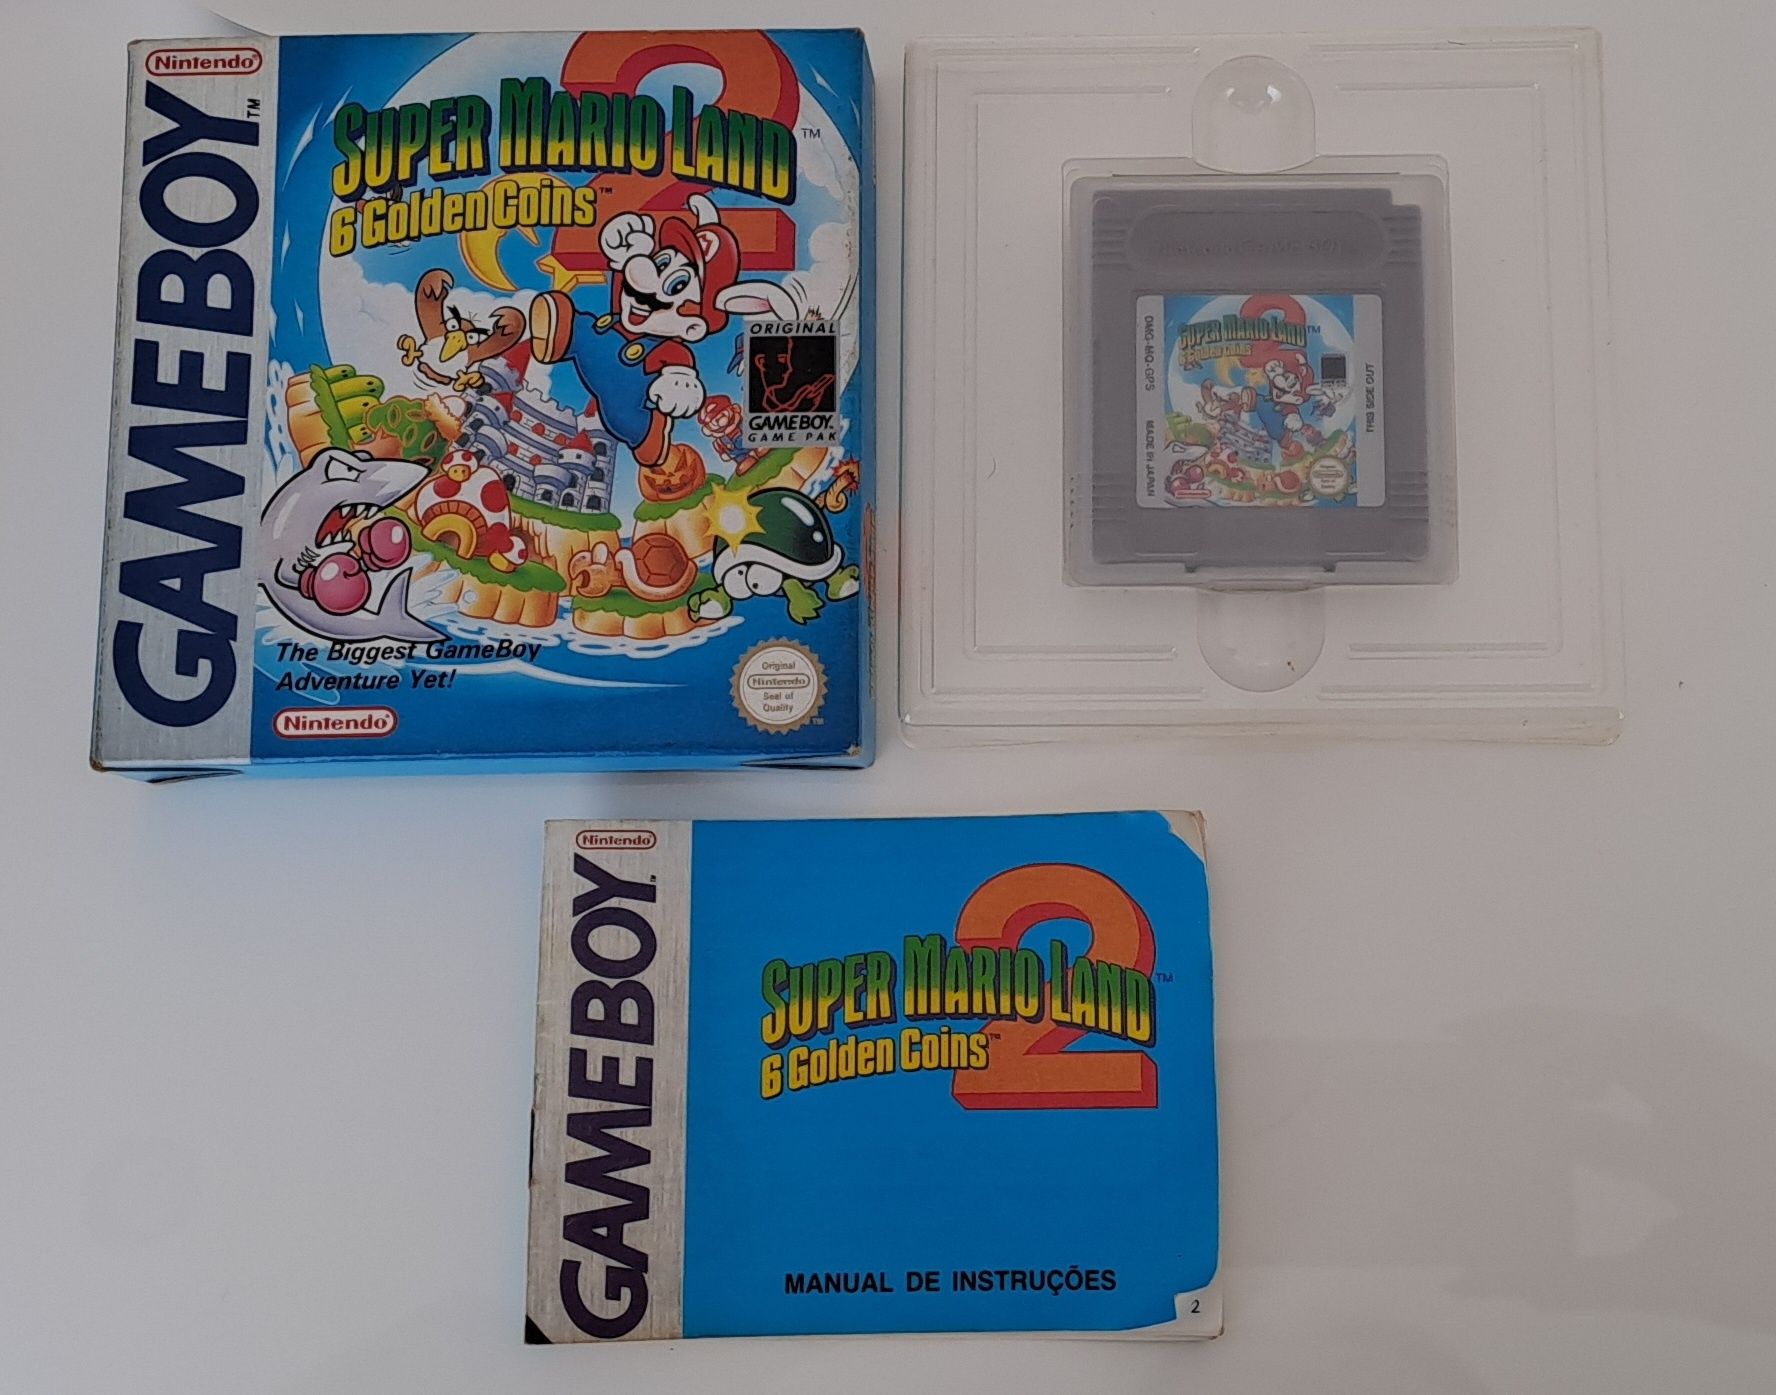 Super Mario Land 2 - 6 Golden Coins Game Boy (CIB)